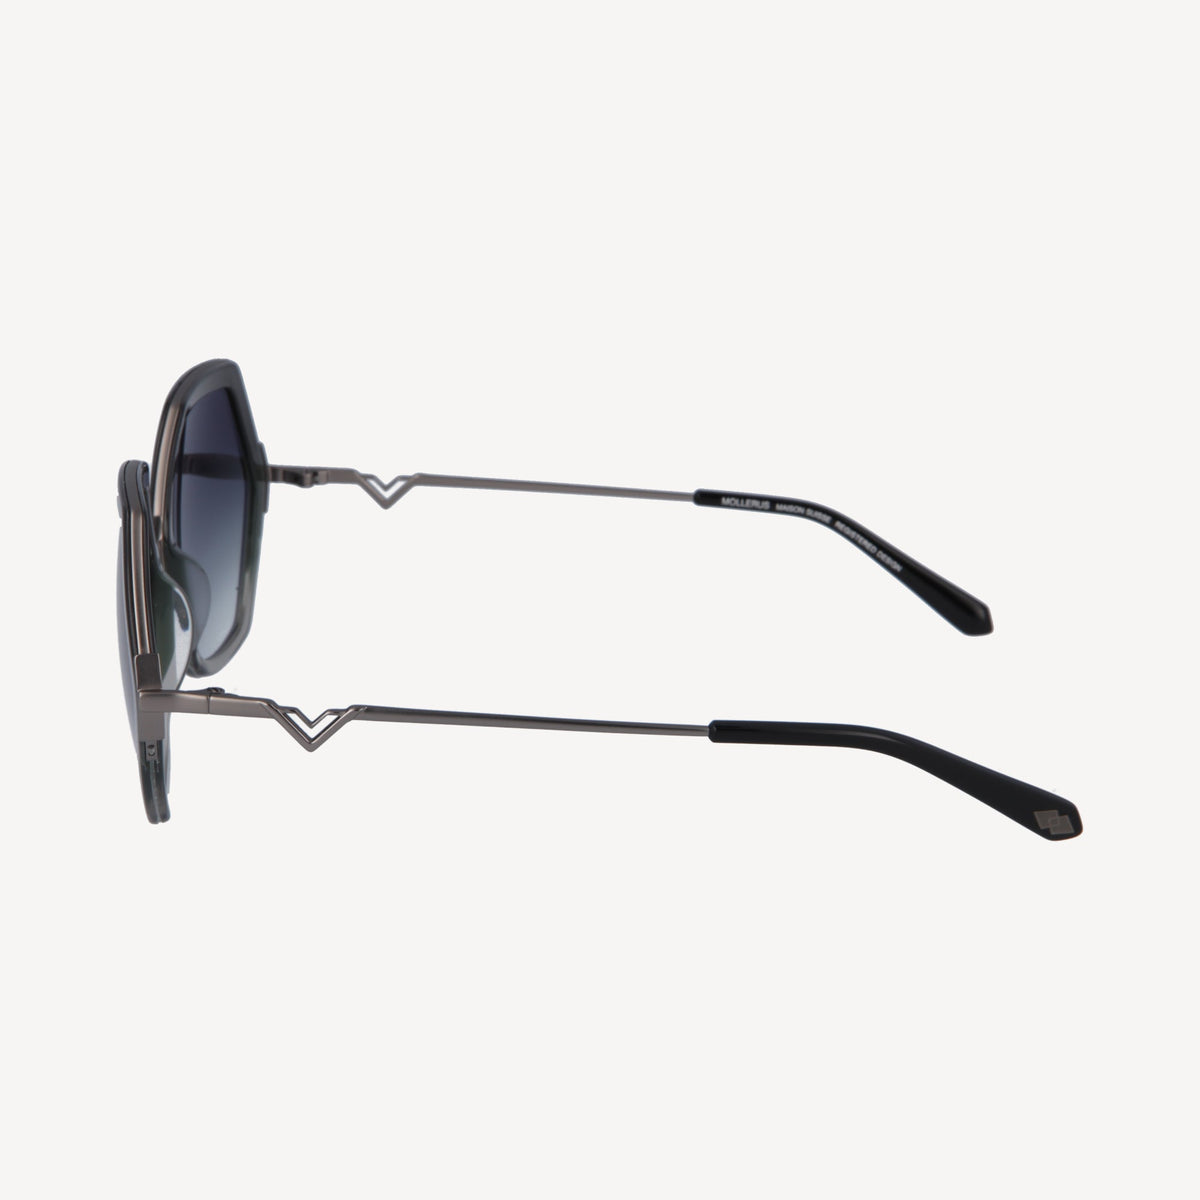 AGNEL | Sonnenbrille classic schwarz/altsilber